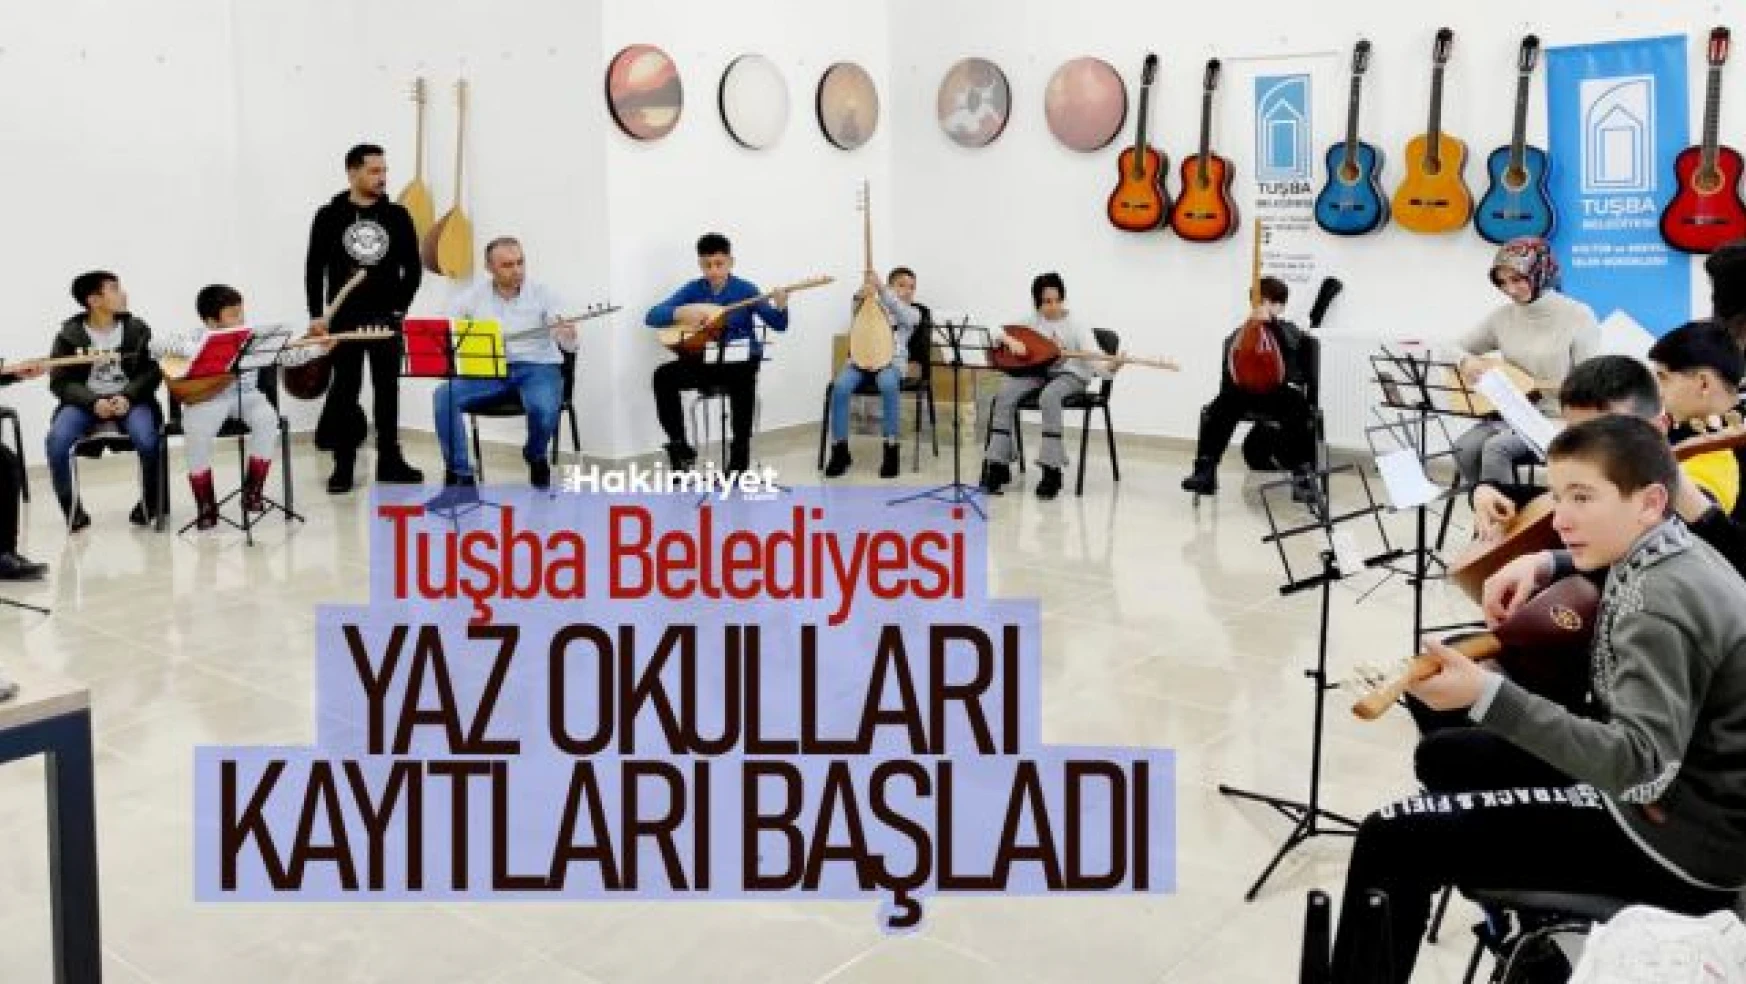 Tuşba Belediyesi'nin 'Yaz Okulları' kayıtları başladı